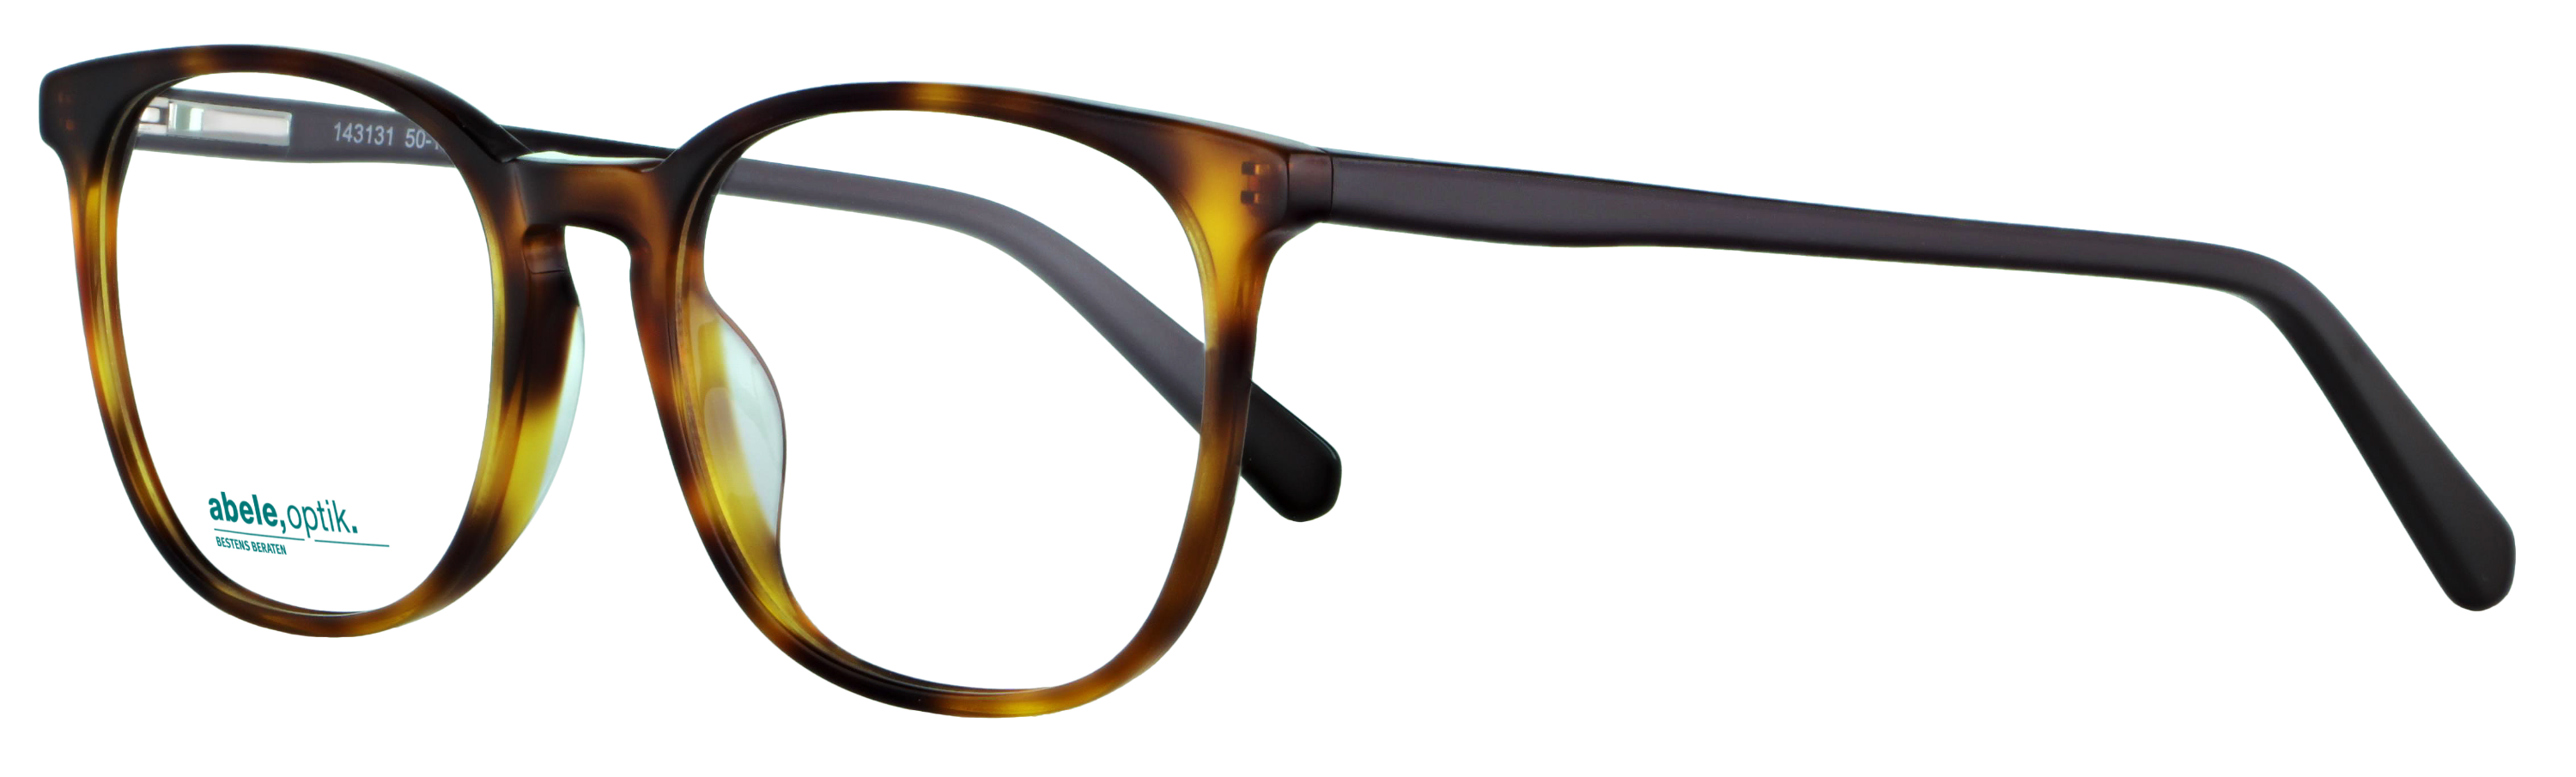 Das Bild zeigt die Korrektionsbrille 143131 von der Marke Abele Optik in havanna.